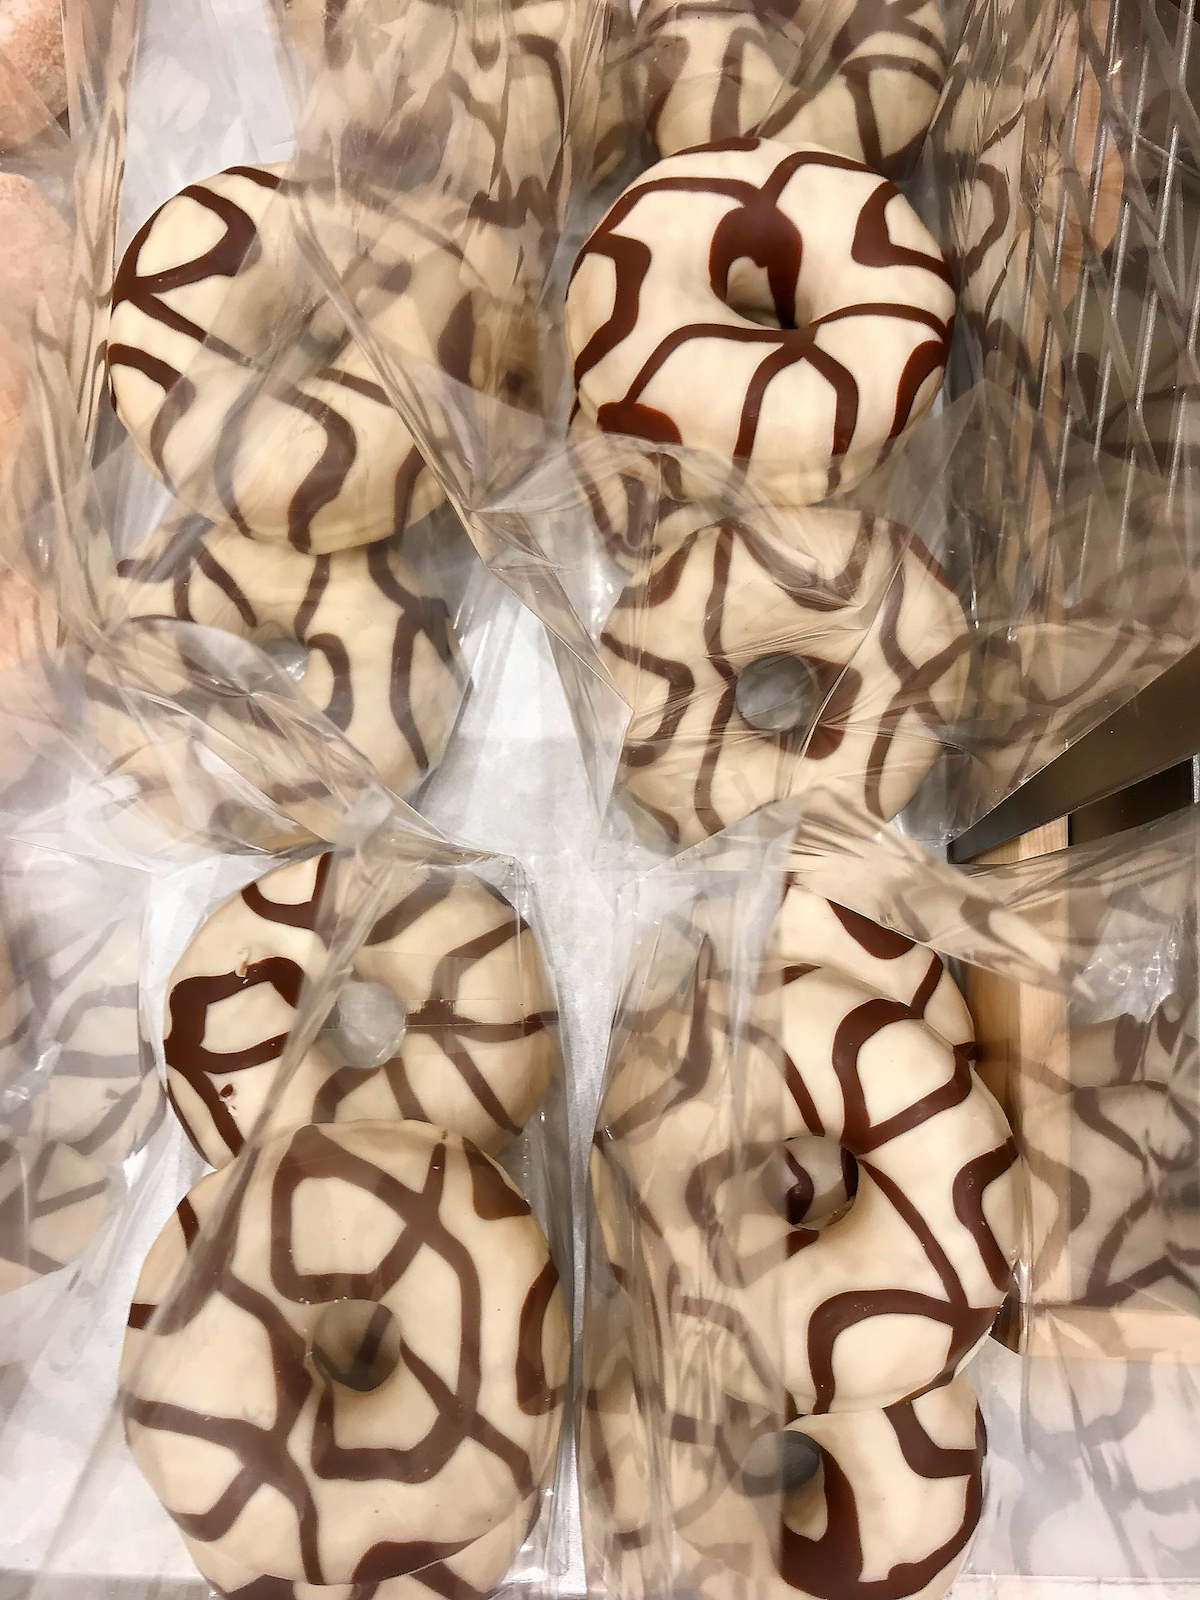 Mini donuts in cellophane bag